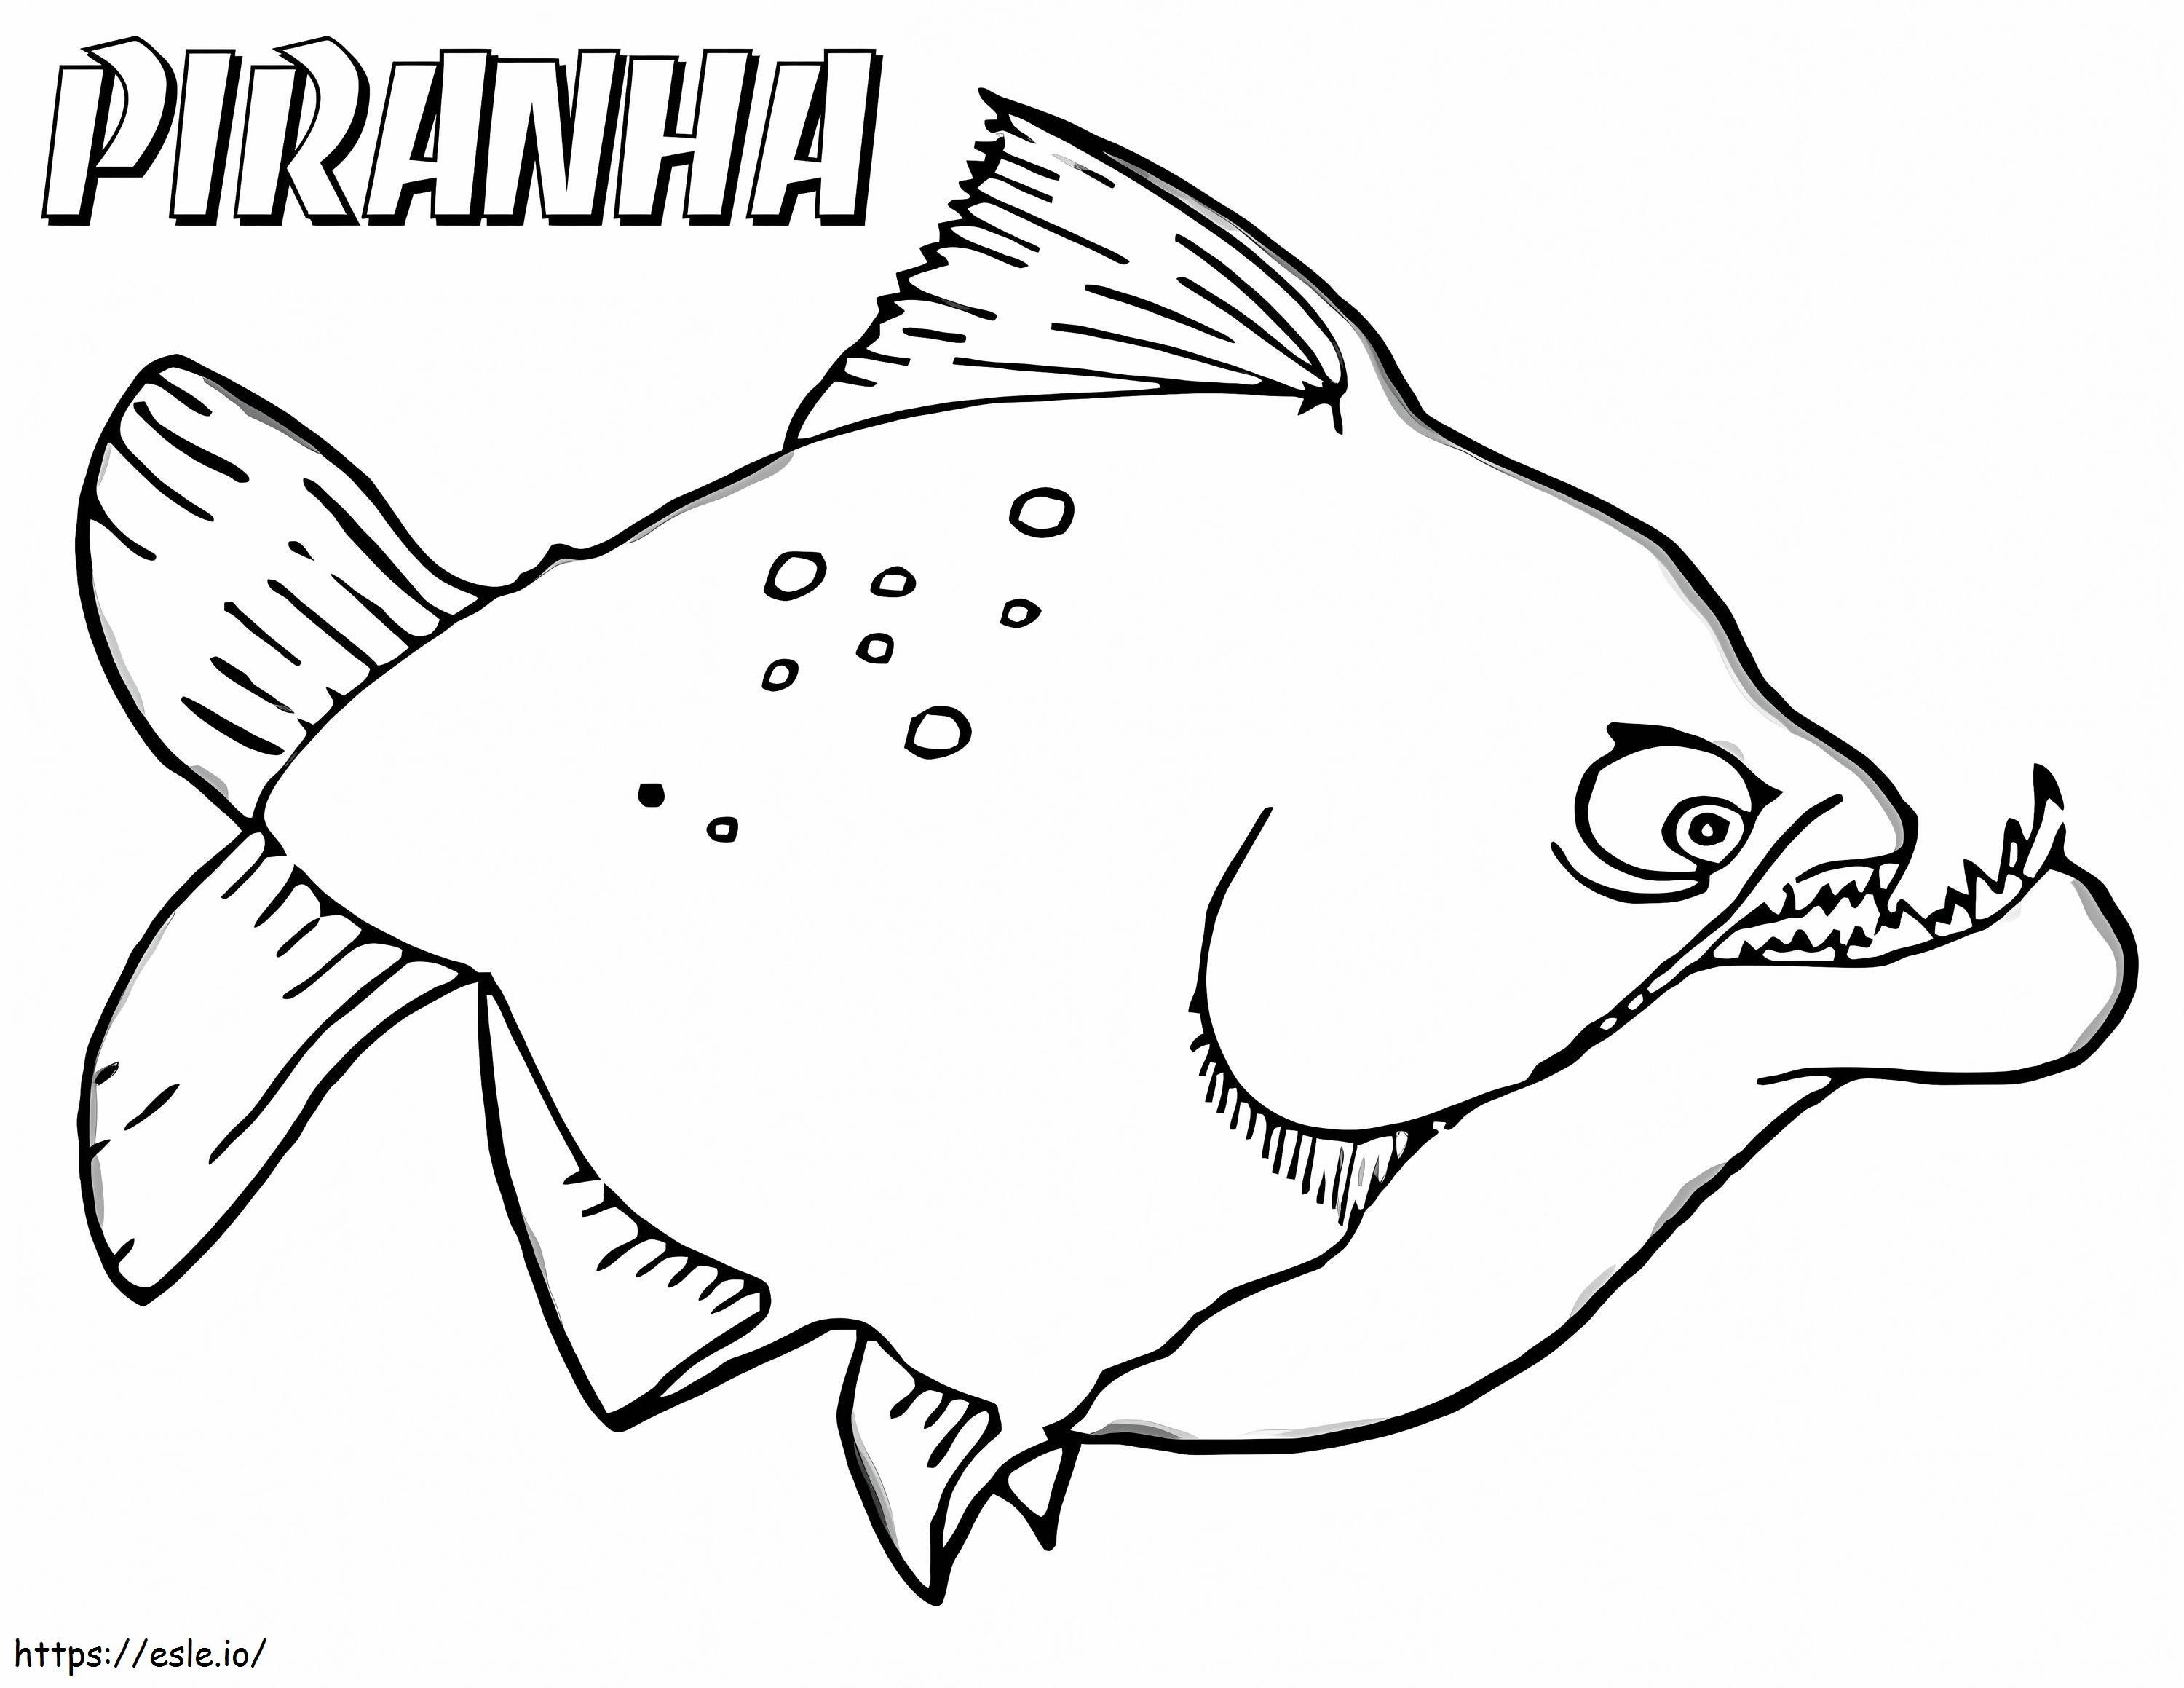 Piranha periculoasă de colorat